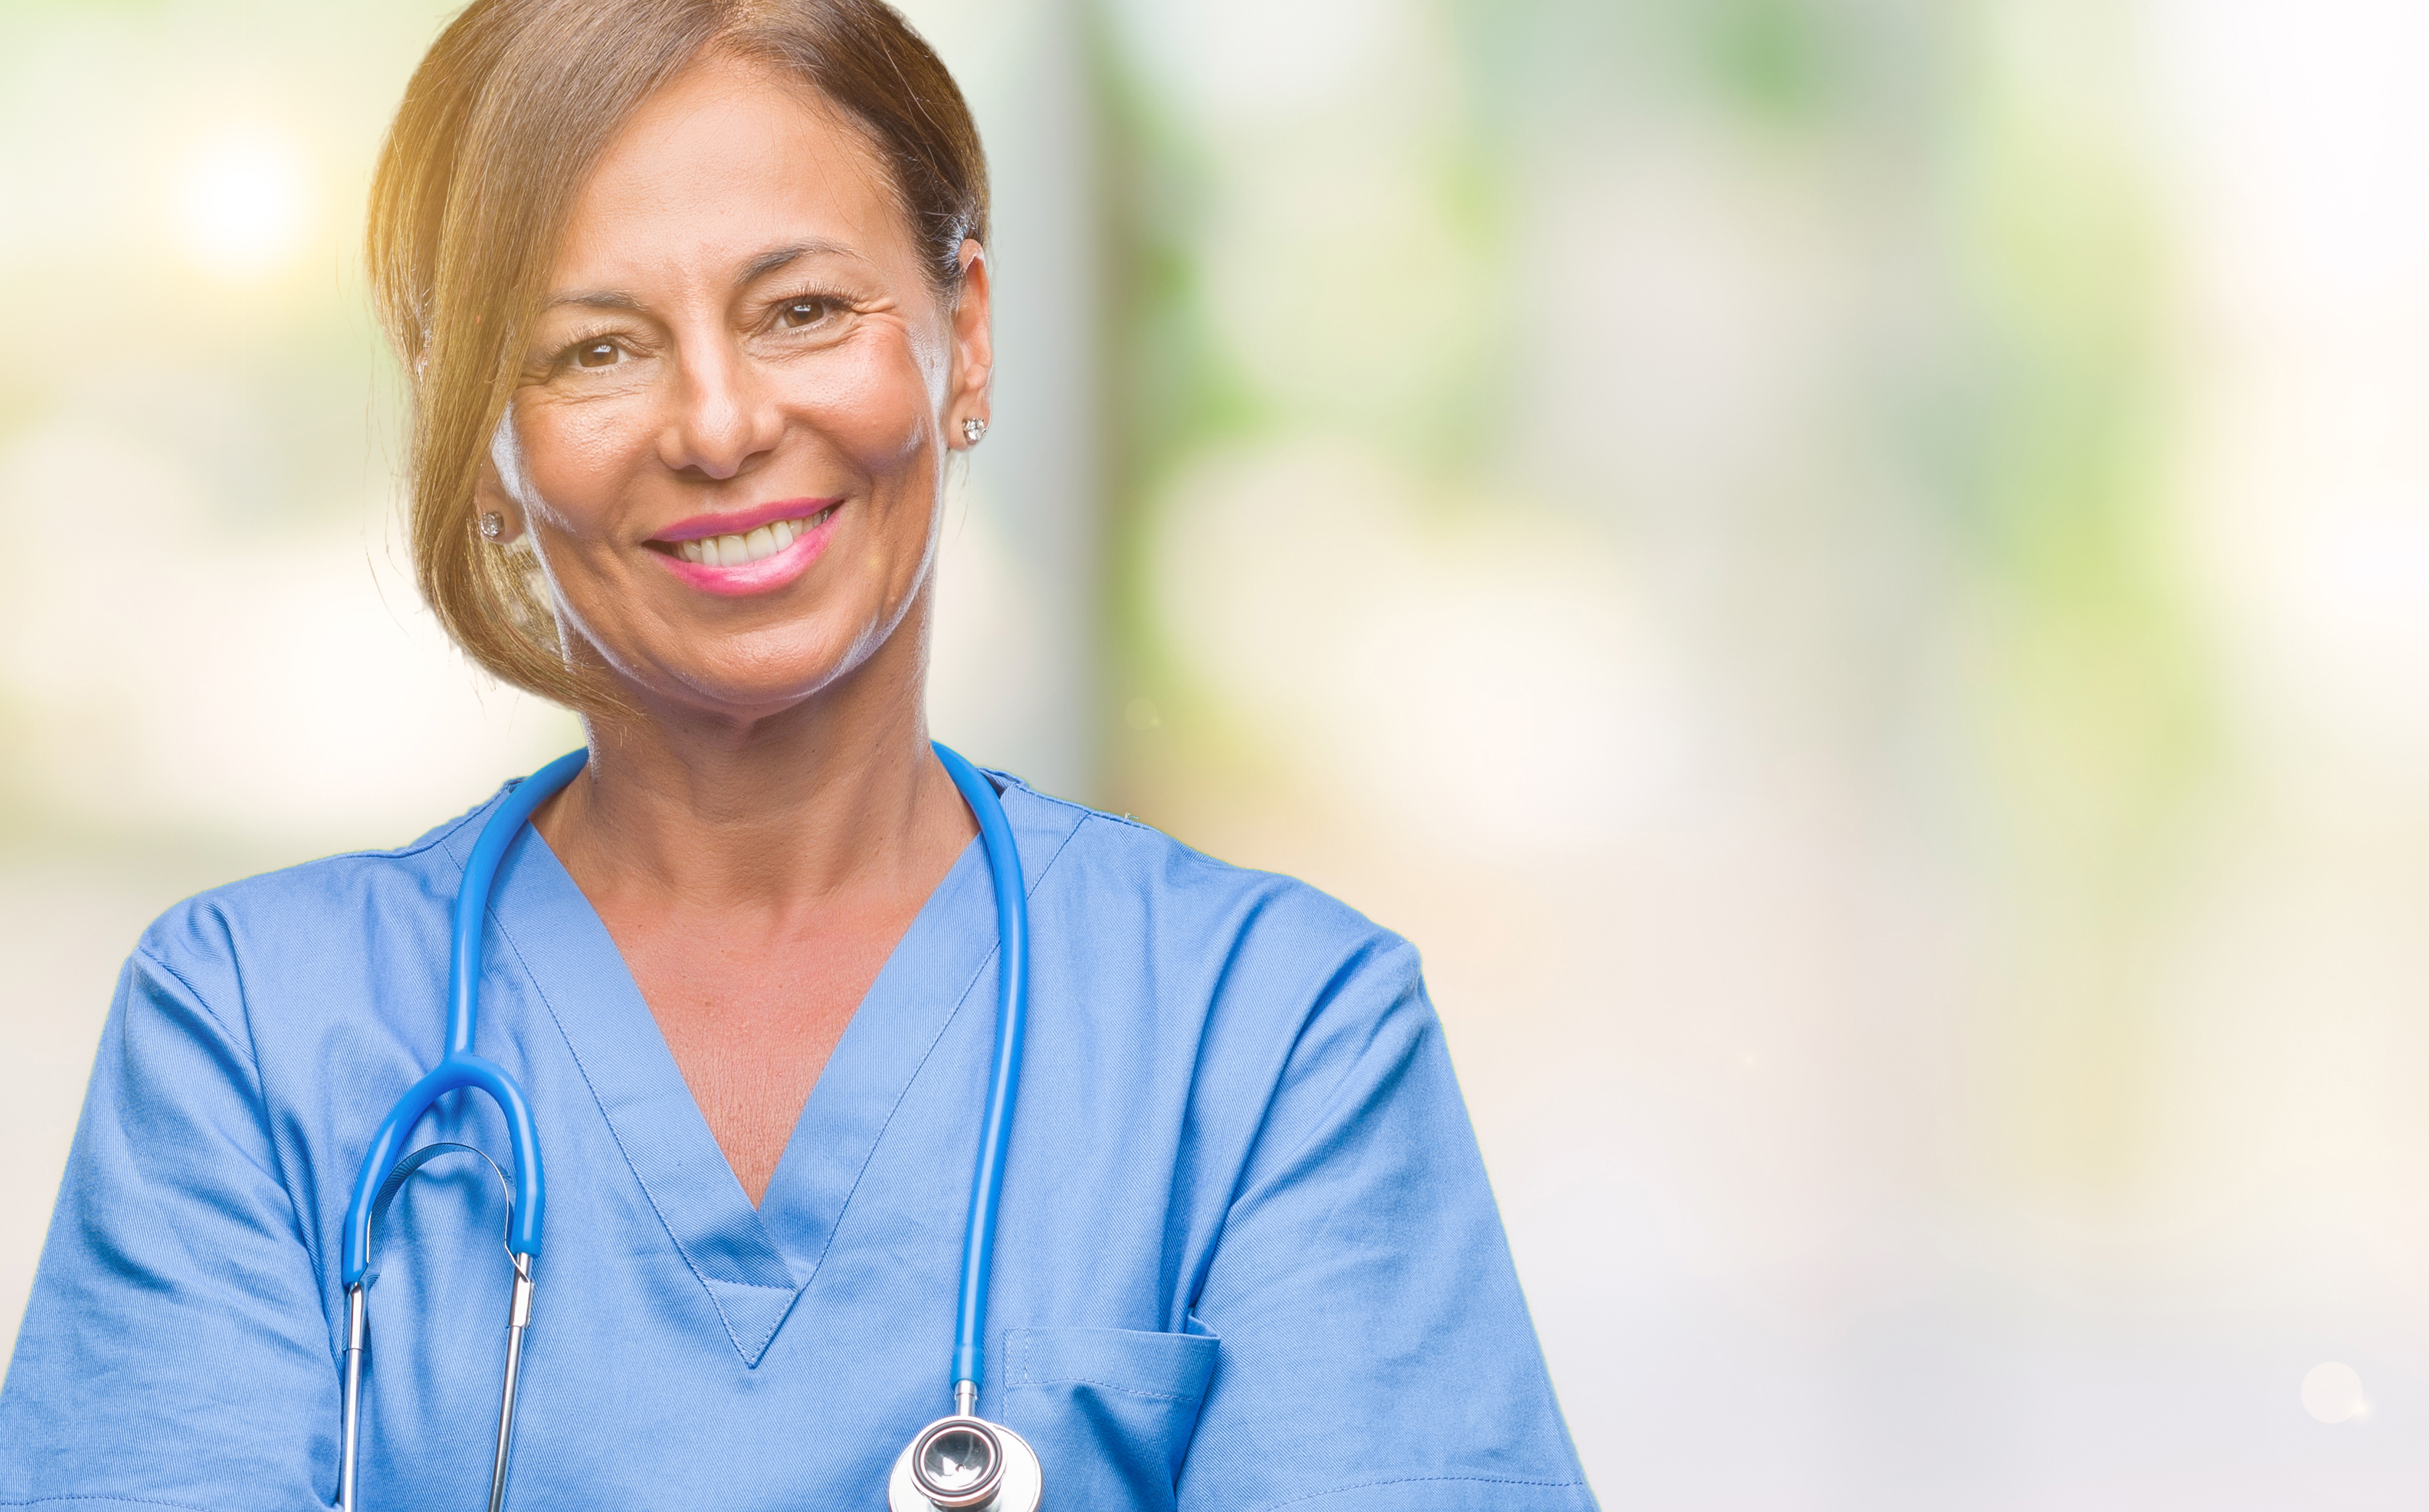 Eine Krankenschwester | Quelle: Shutterstock